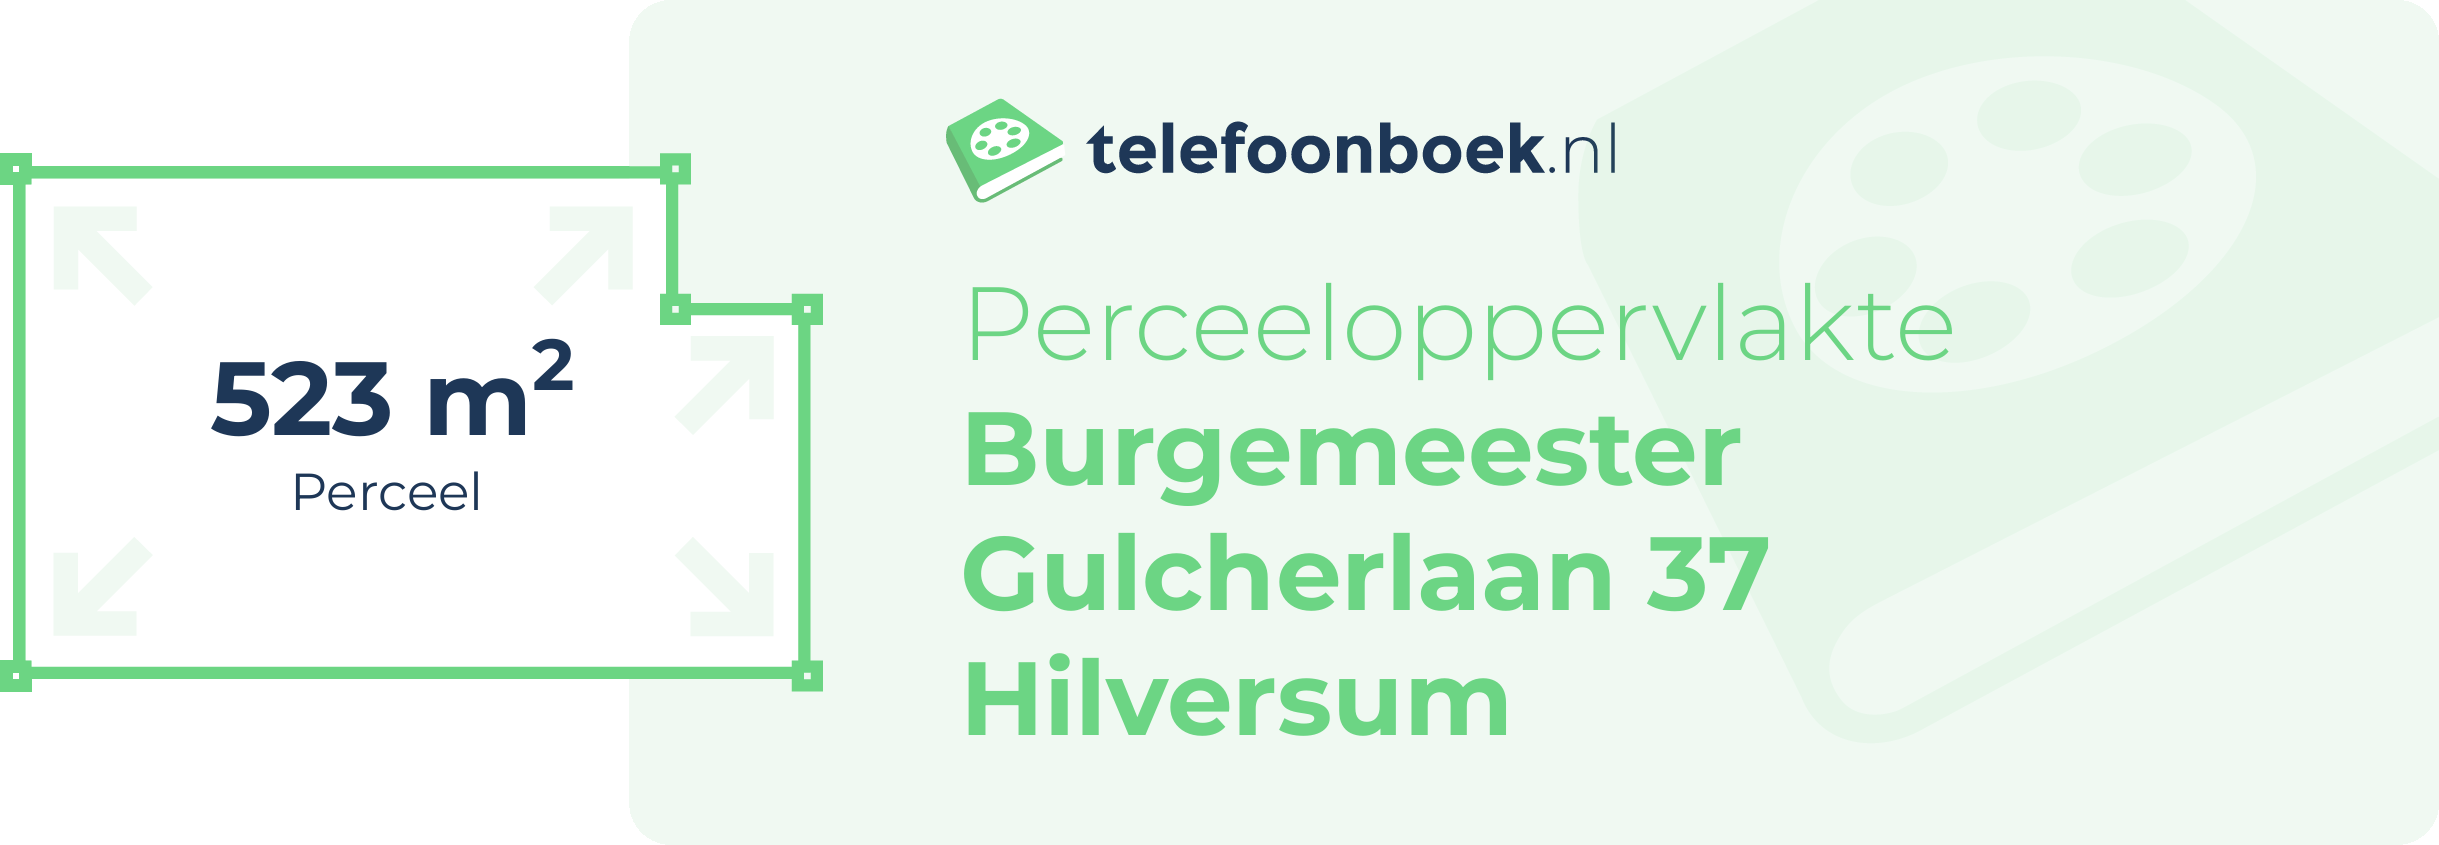 Perceeloppervlakte Burgemeester Gulcherlaan 37 Hilversum